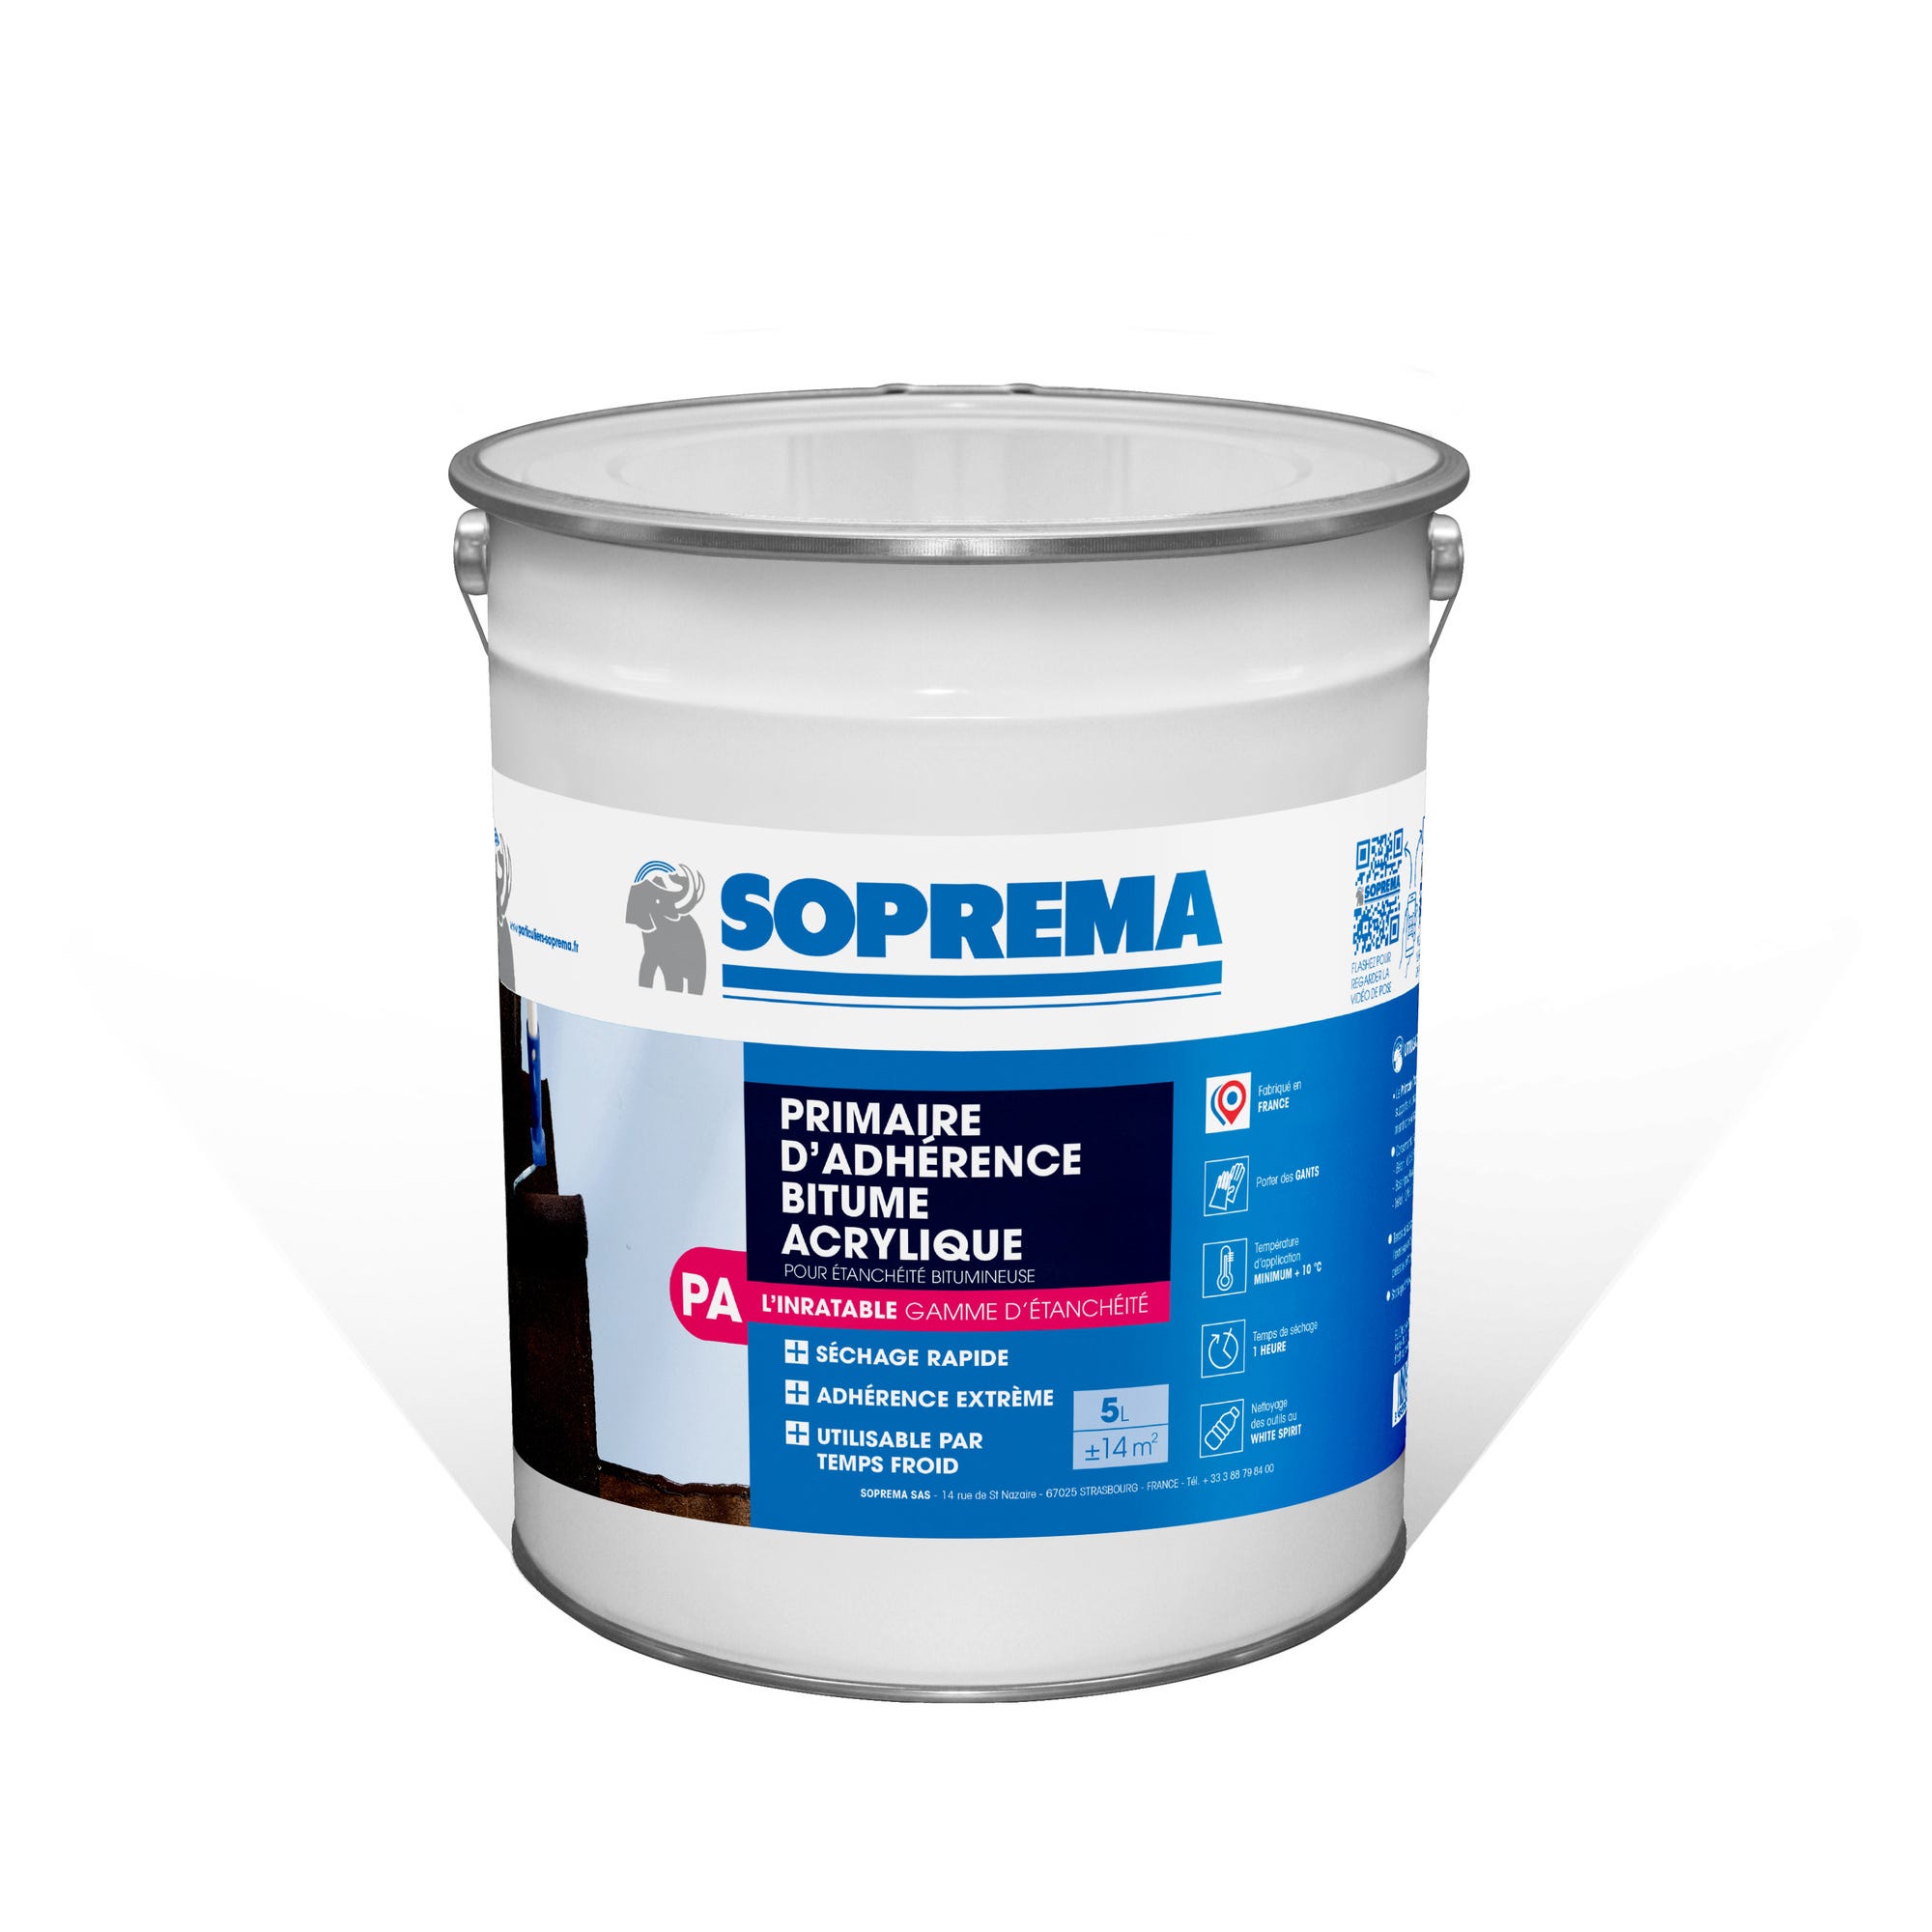 Primaire d'adhérence bitume acrylique pour étanchéité bitumineuse 5L - SOPREMA 0